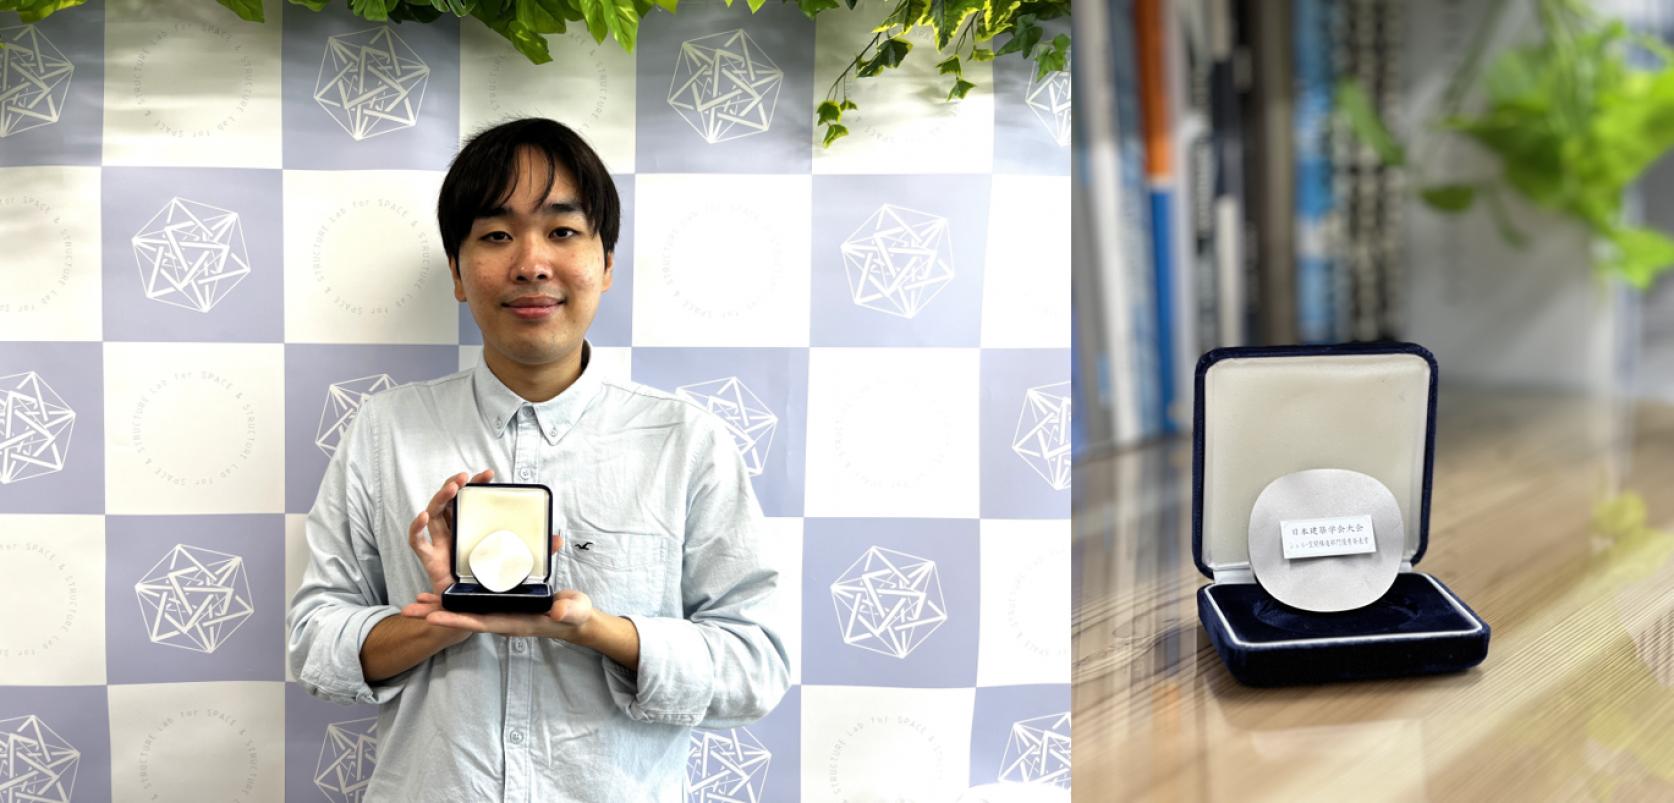 建築学専攻2年齊藤立都さんが、2022年度日本建築学会学術講演会にて、シェル・空間構造部門 若手優秀発表賞を受賞しました。